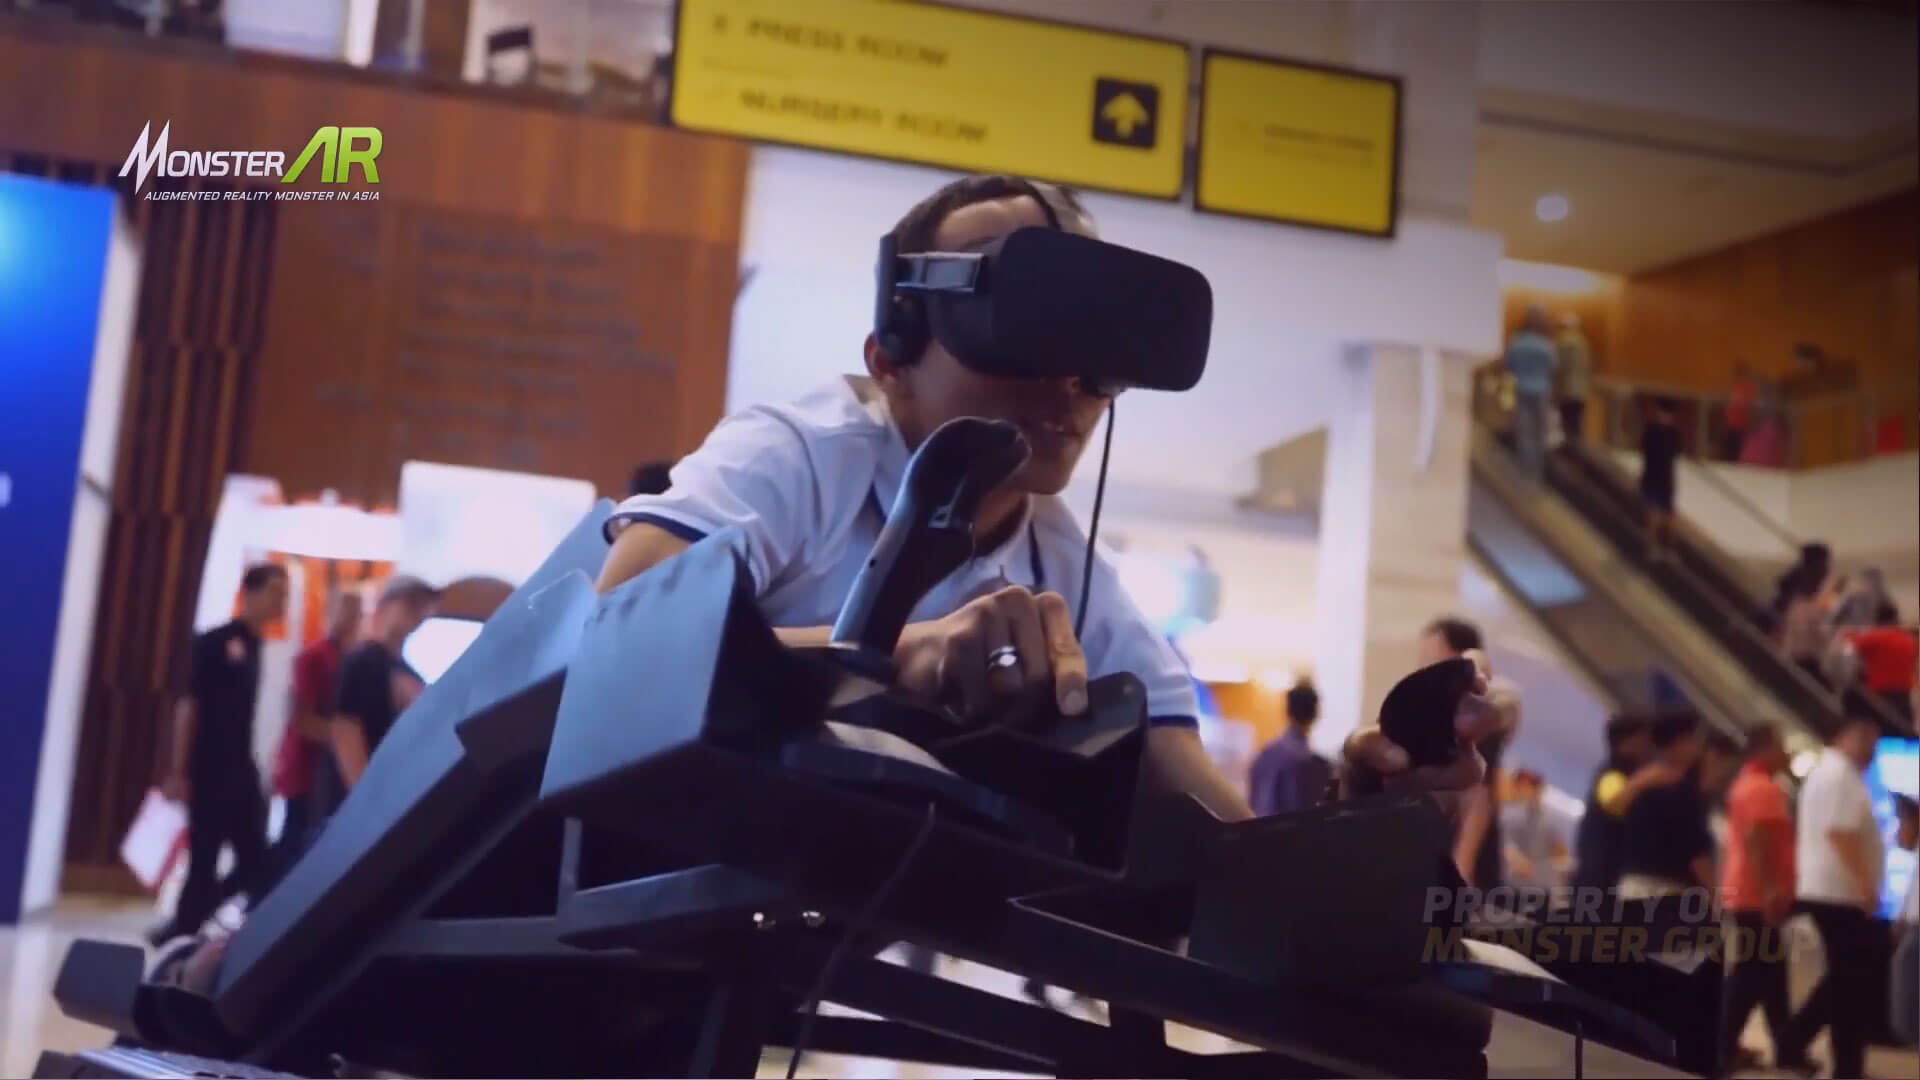 Vendor Virtual Reality Terpercaya dan Berpengalaman untuk Segala Kebutuhan Bisnis